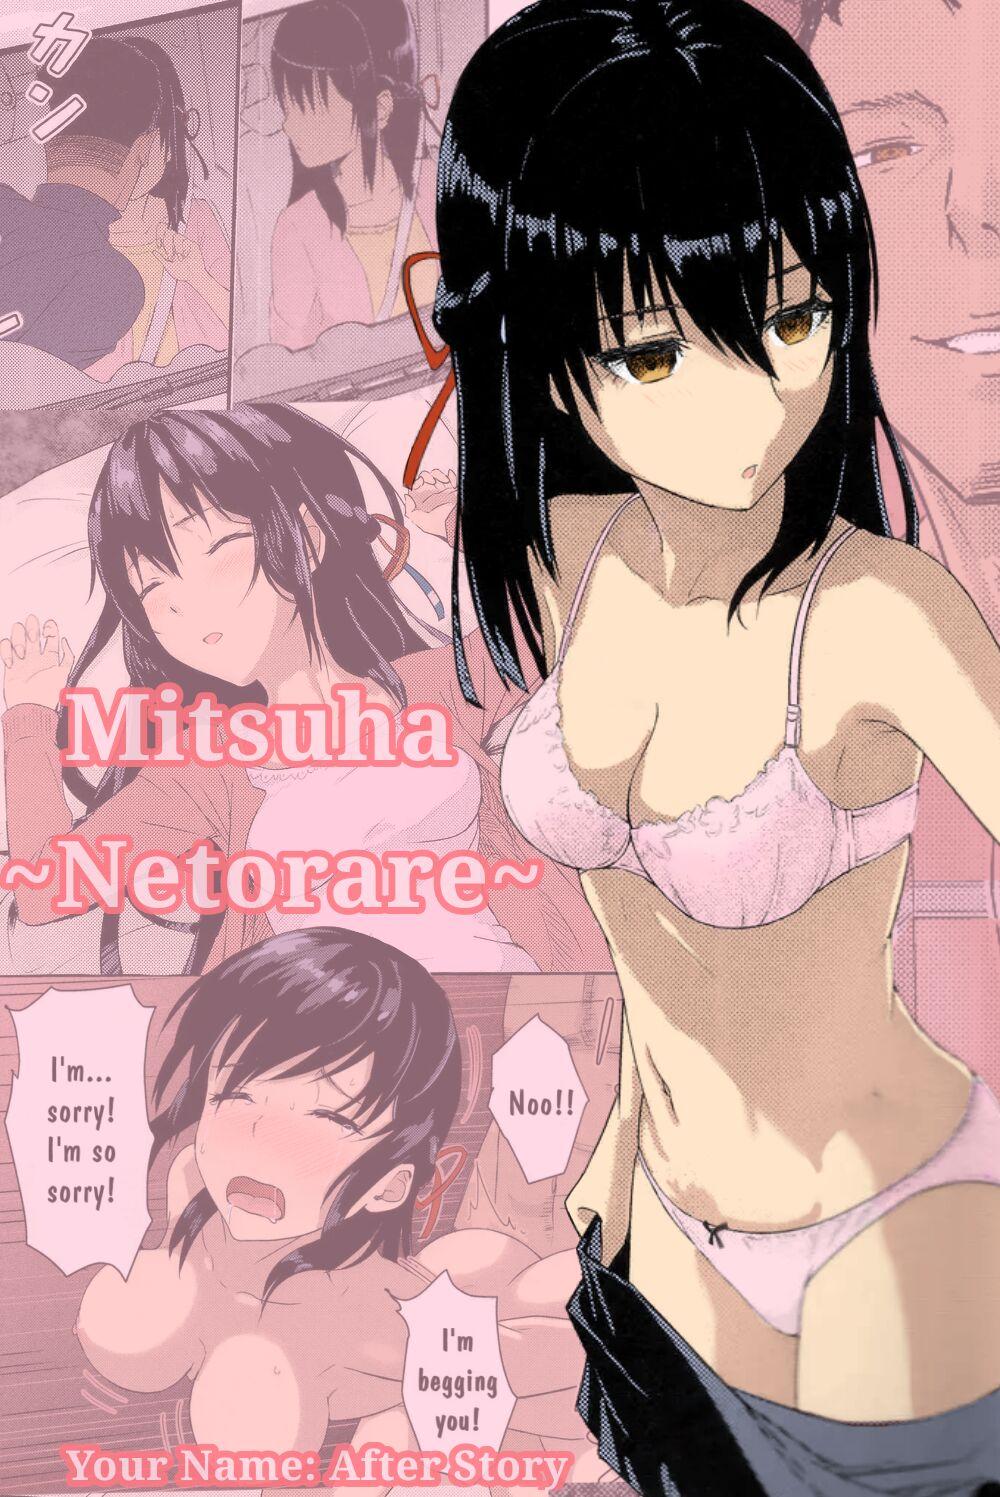 Kimi no na wa : After Story - Mitsuha 0